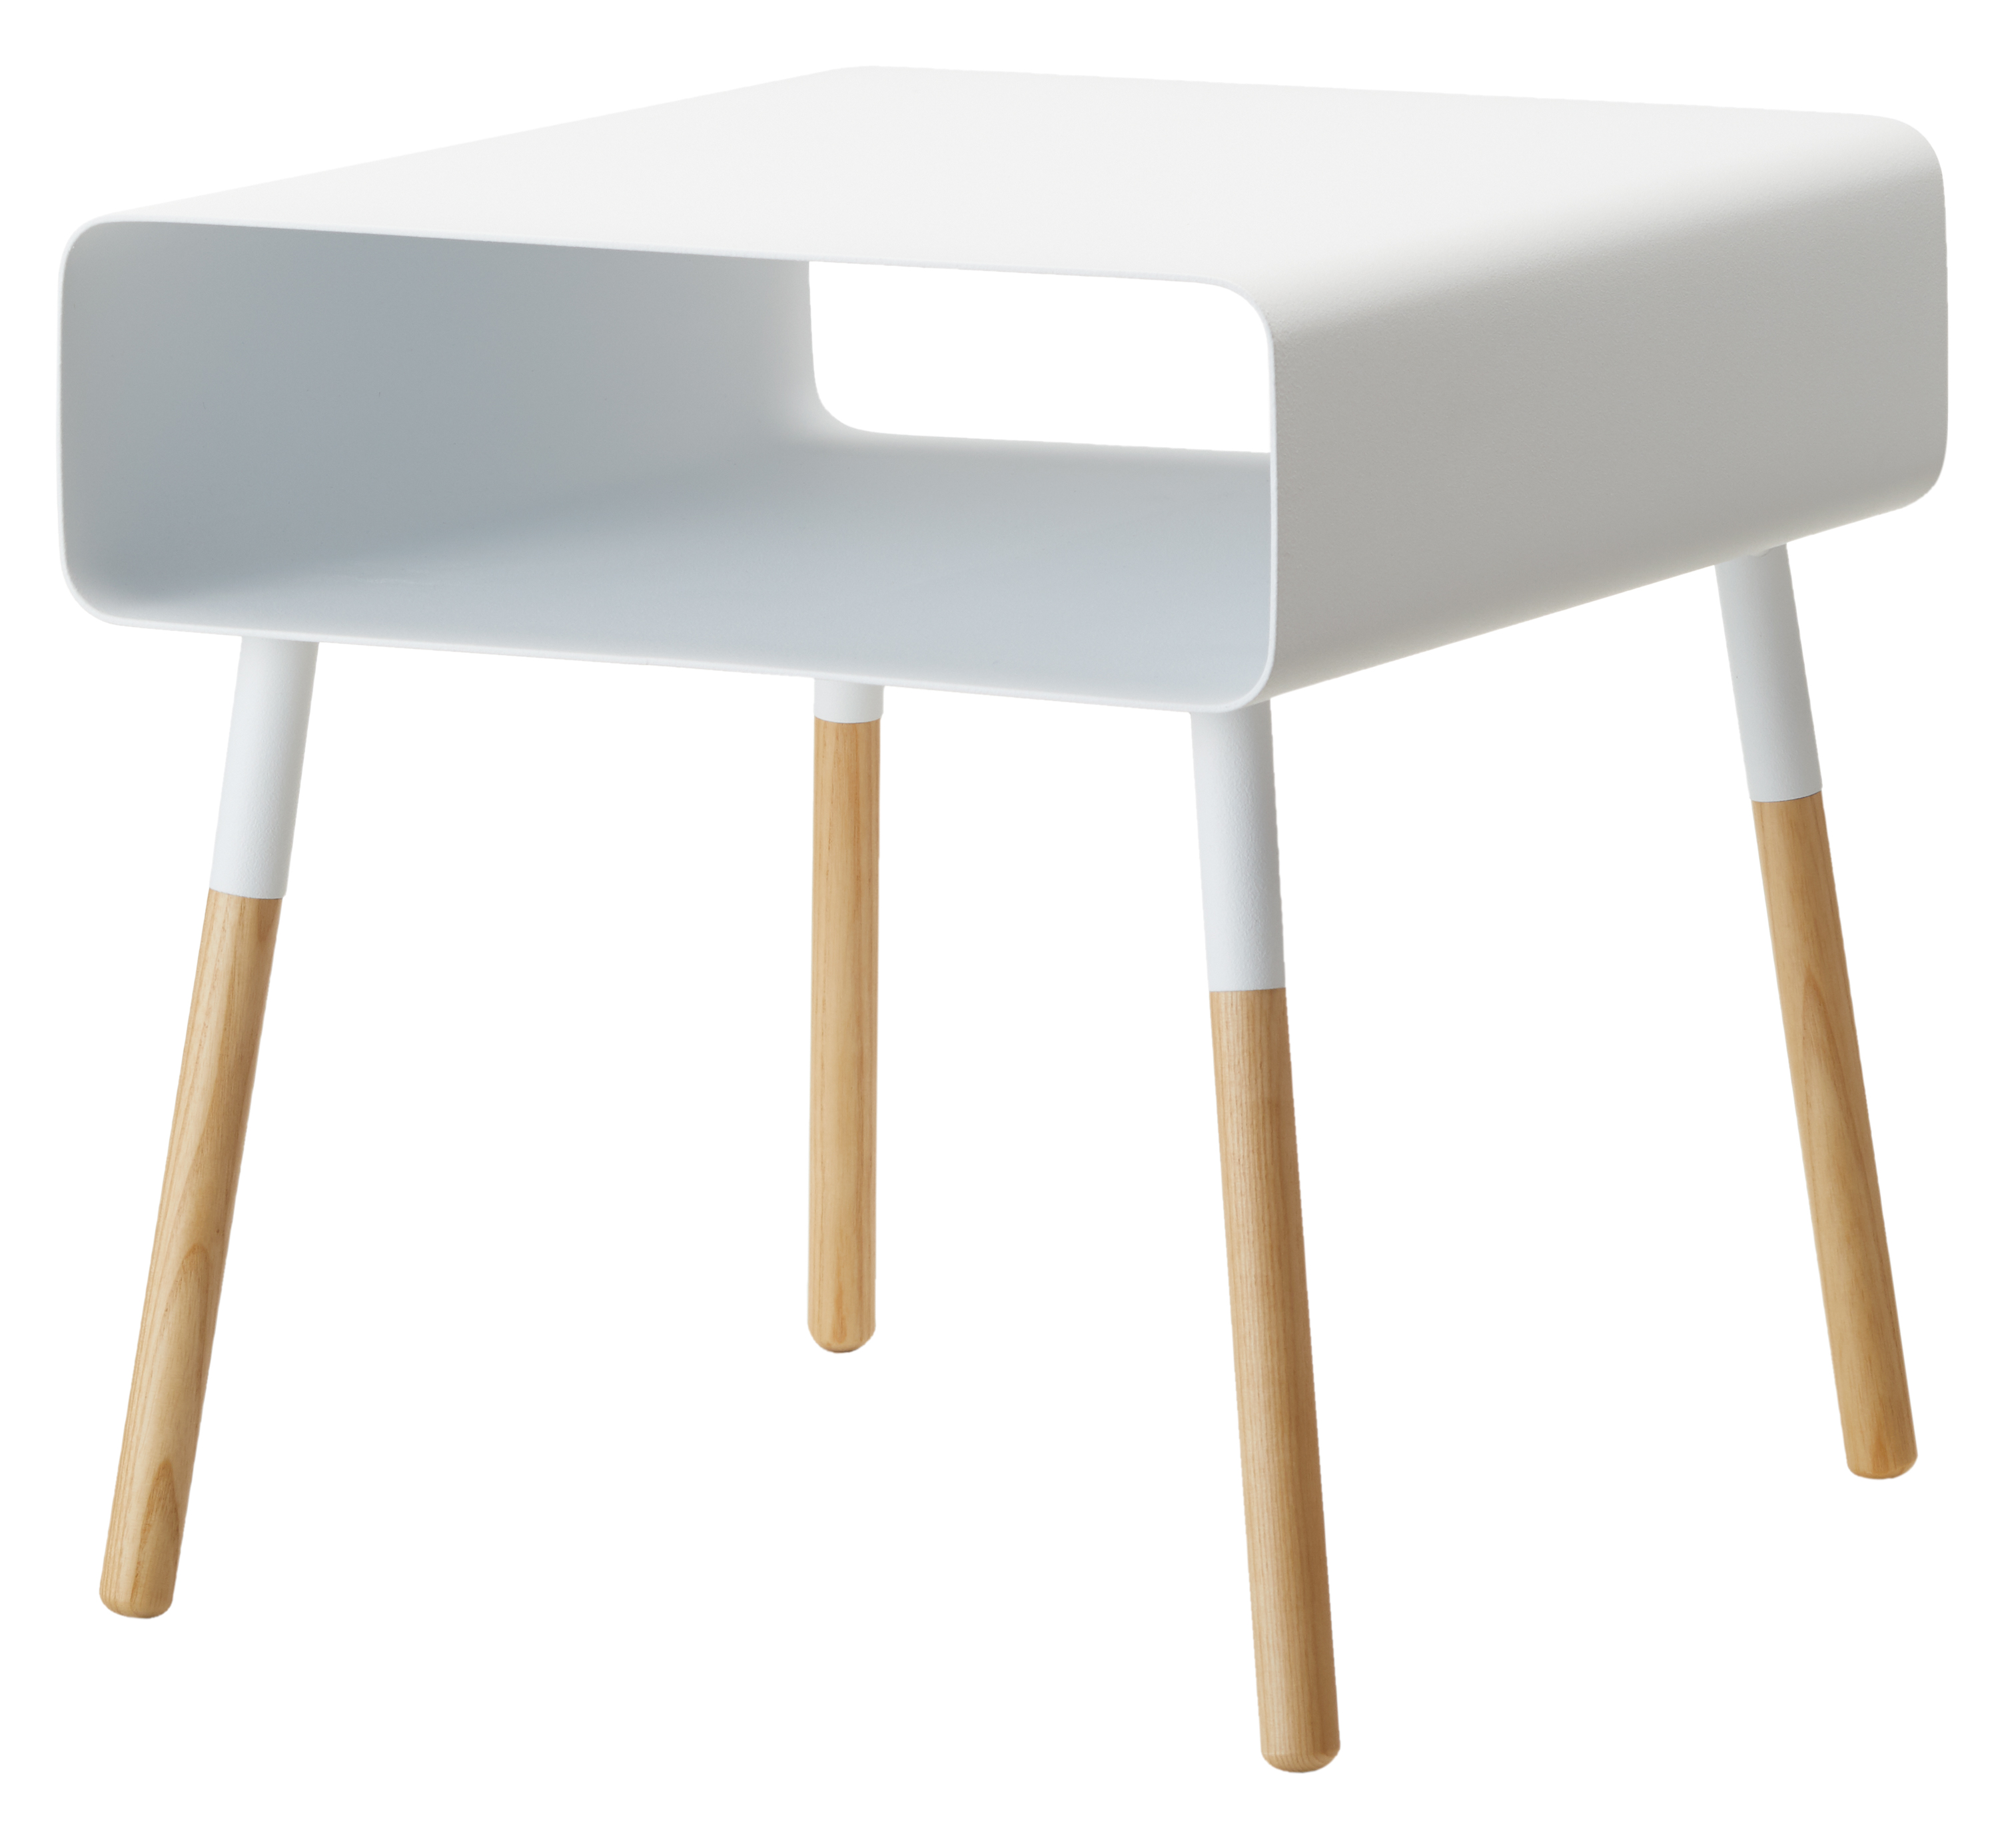 Yamazaki White Low Side Table with Storage Shelf